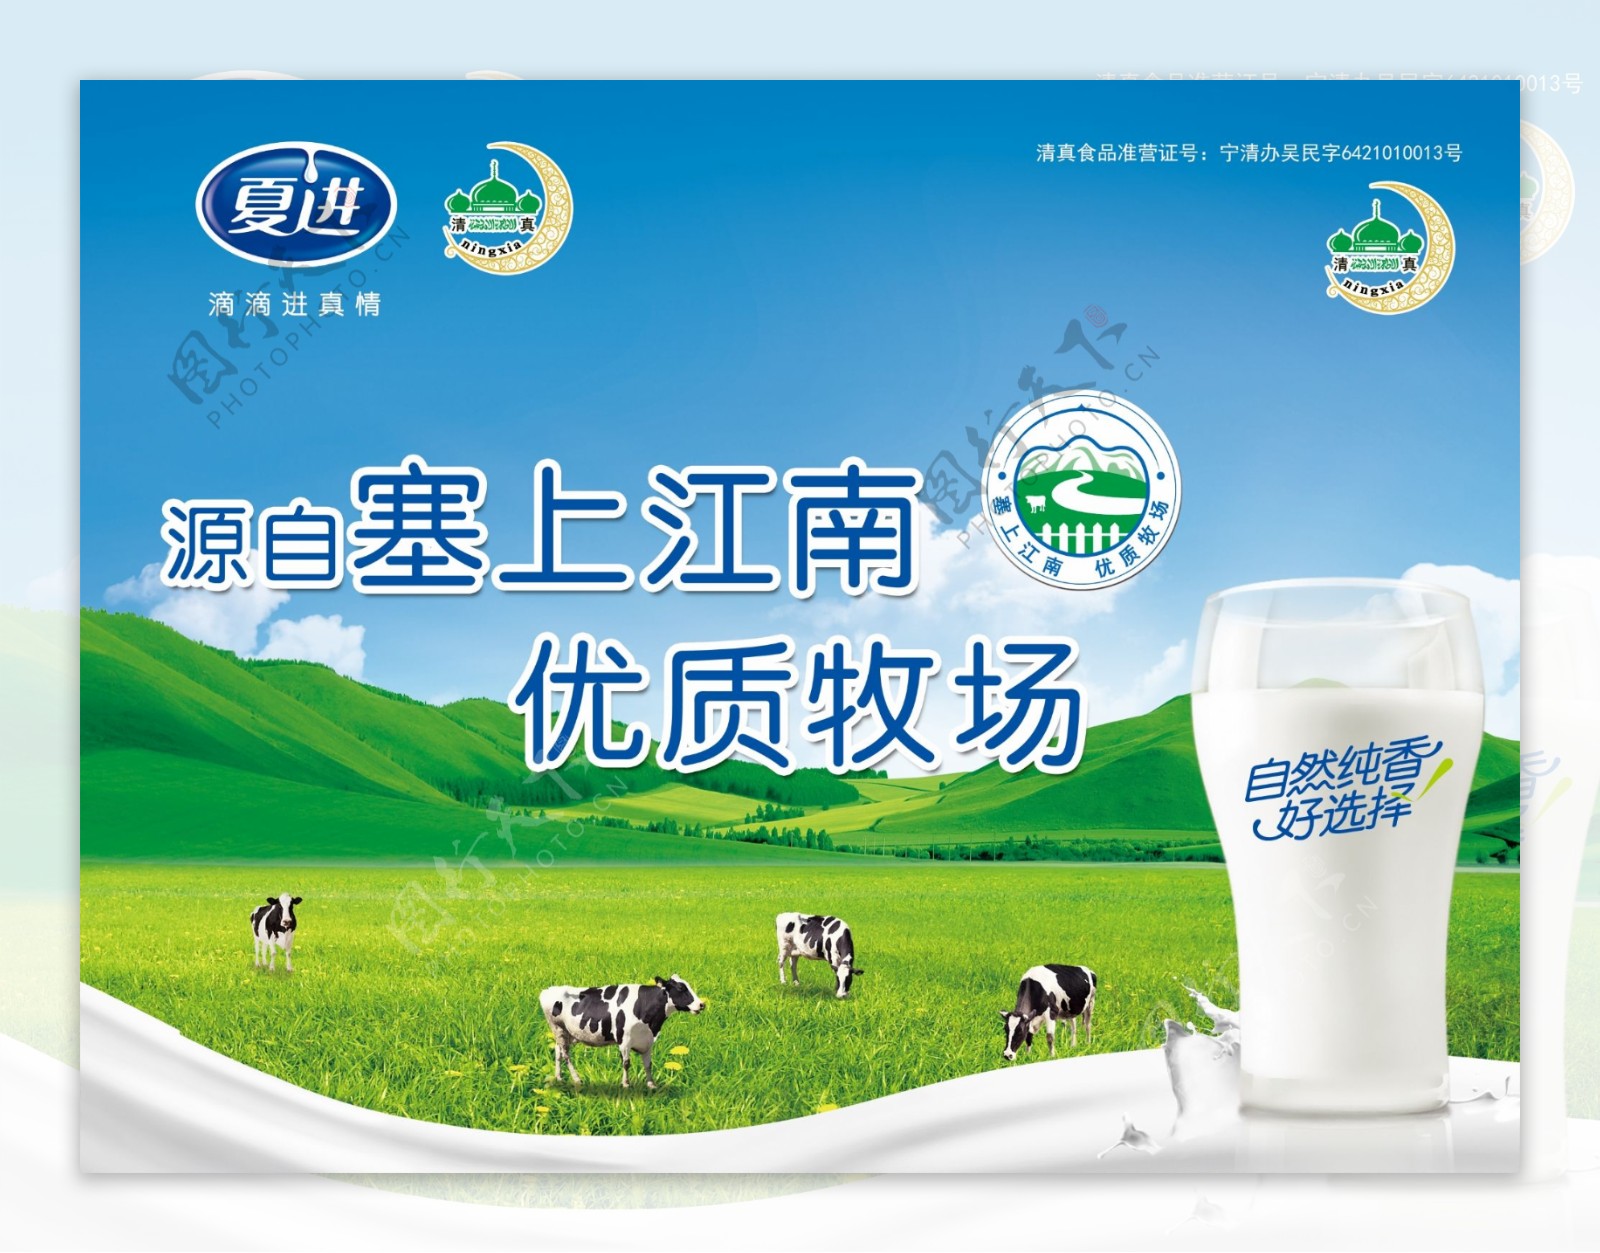 牛奶广告